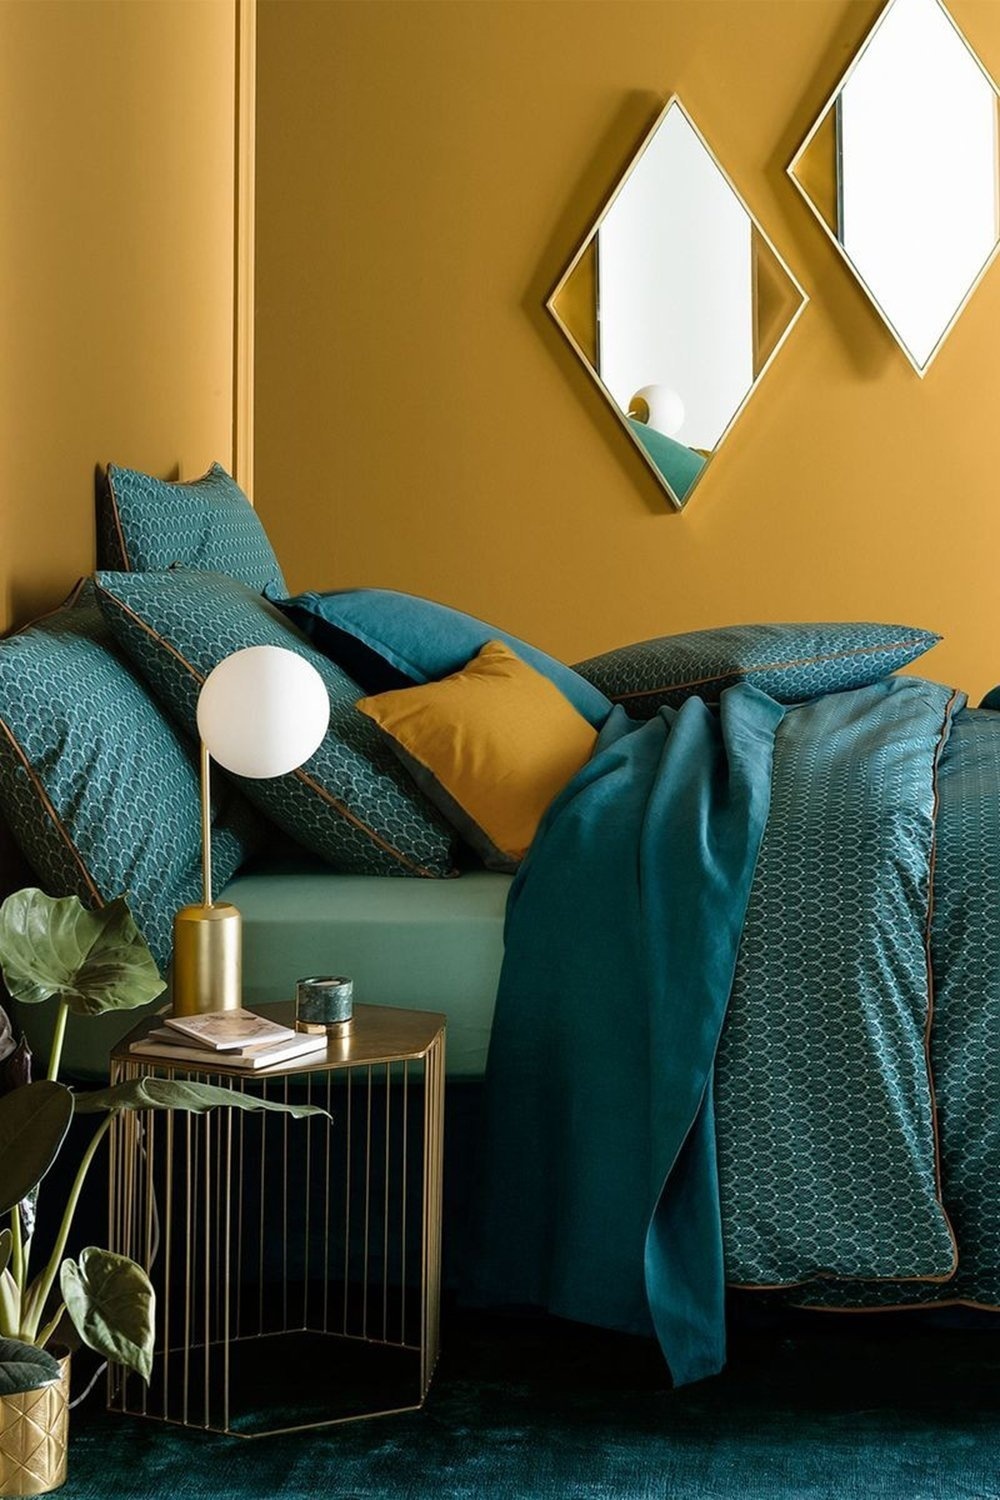 Nếu phòng ngủ ở trên nhẹ nhàng, lãng mạn với gam vàng pastel thì không gian này lại thời trang và cá tính khi kết hợp màu vàng mù tạt với sắc xanh ngọc lục bảo. Cùng với nội thất bằng kim loại mạ vàng đồng như táp đầu giường, đèn bàn, khung gương,... tạo nên sự sang chảnh tuyệt đối.